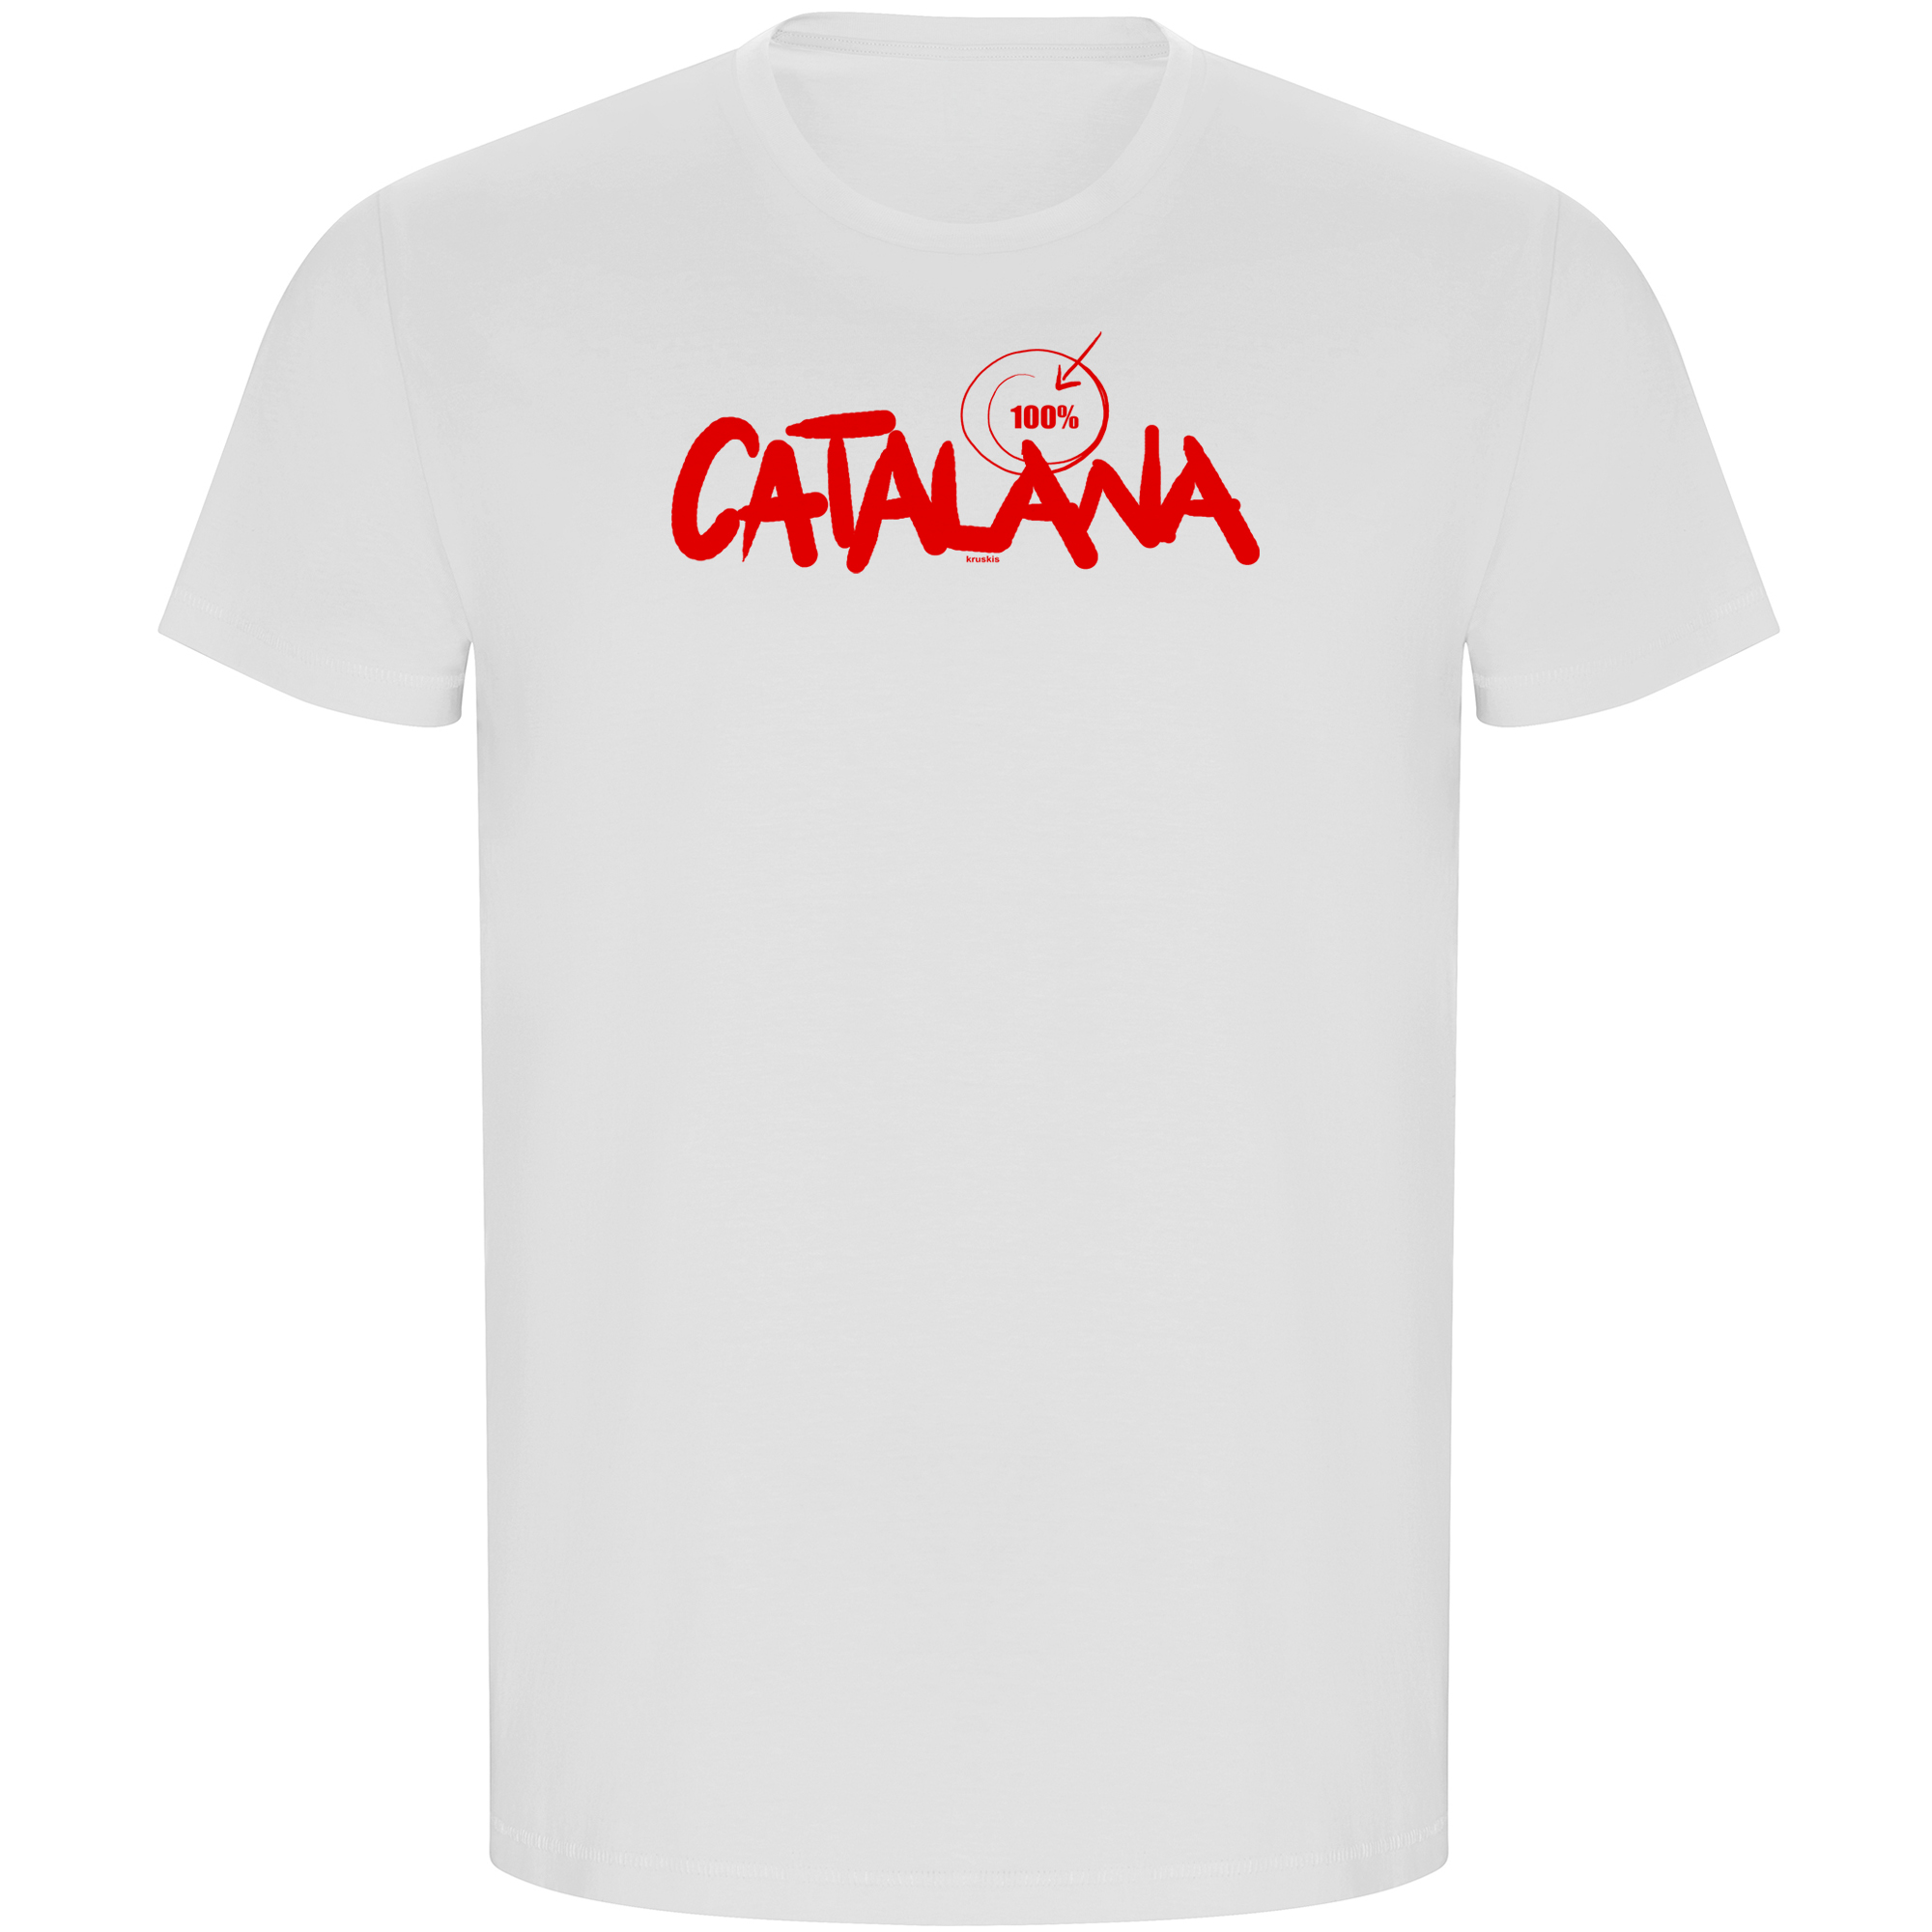 Camiseta ECO Catalunya 100 % Catalana Manga Corta Hombre